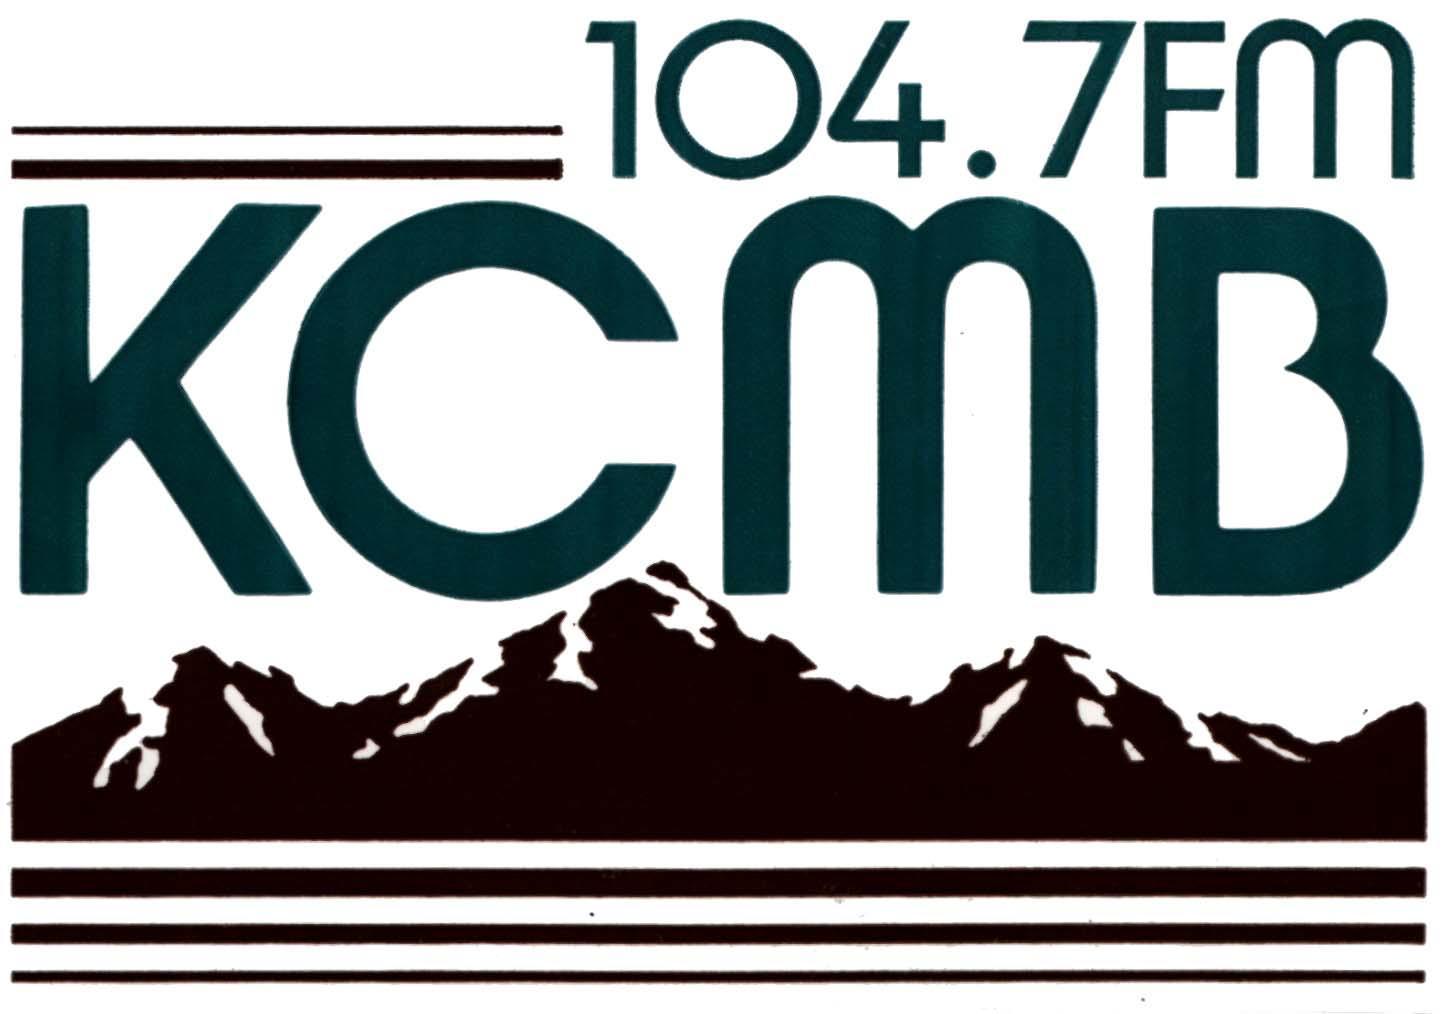 KCMB 104.7 FM